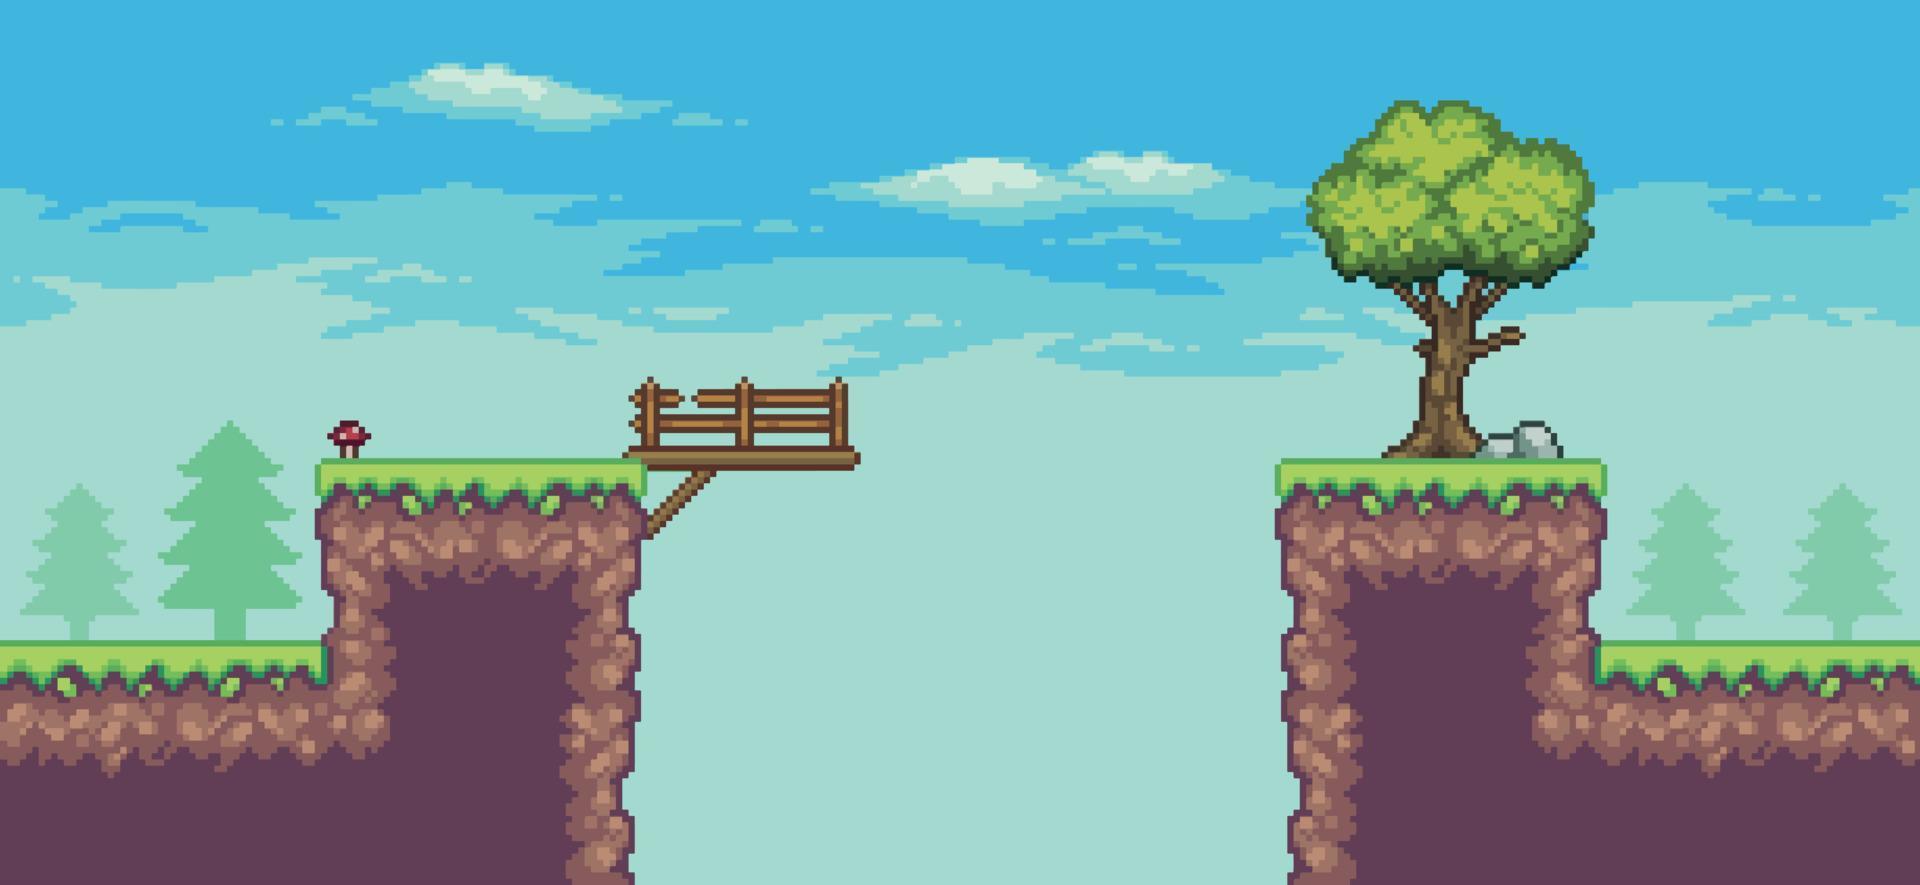 cena de jogo de arcade pixel art com árvore, ponte, cerca e nuvens de fundo vetorial de 8 bits vetor